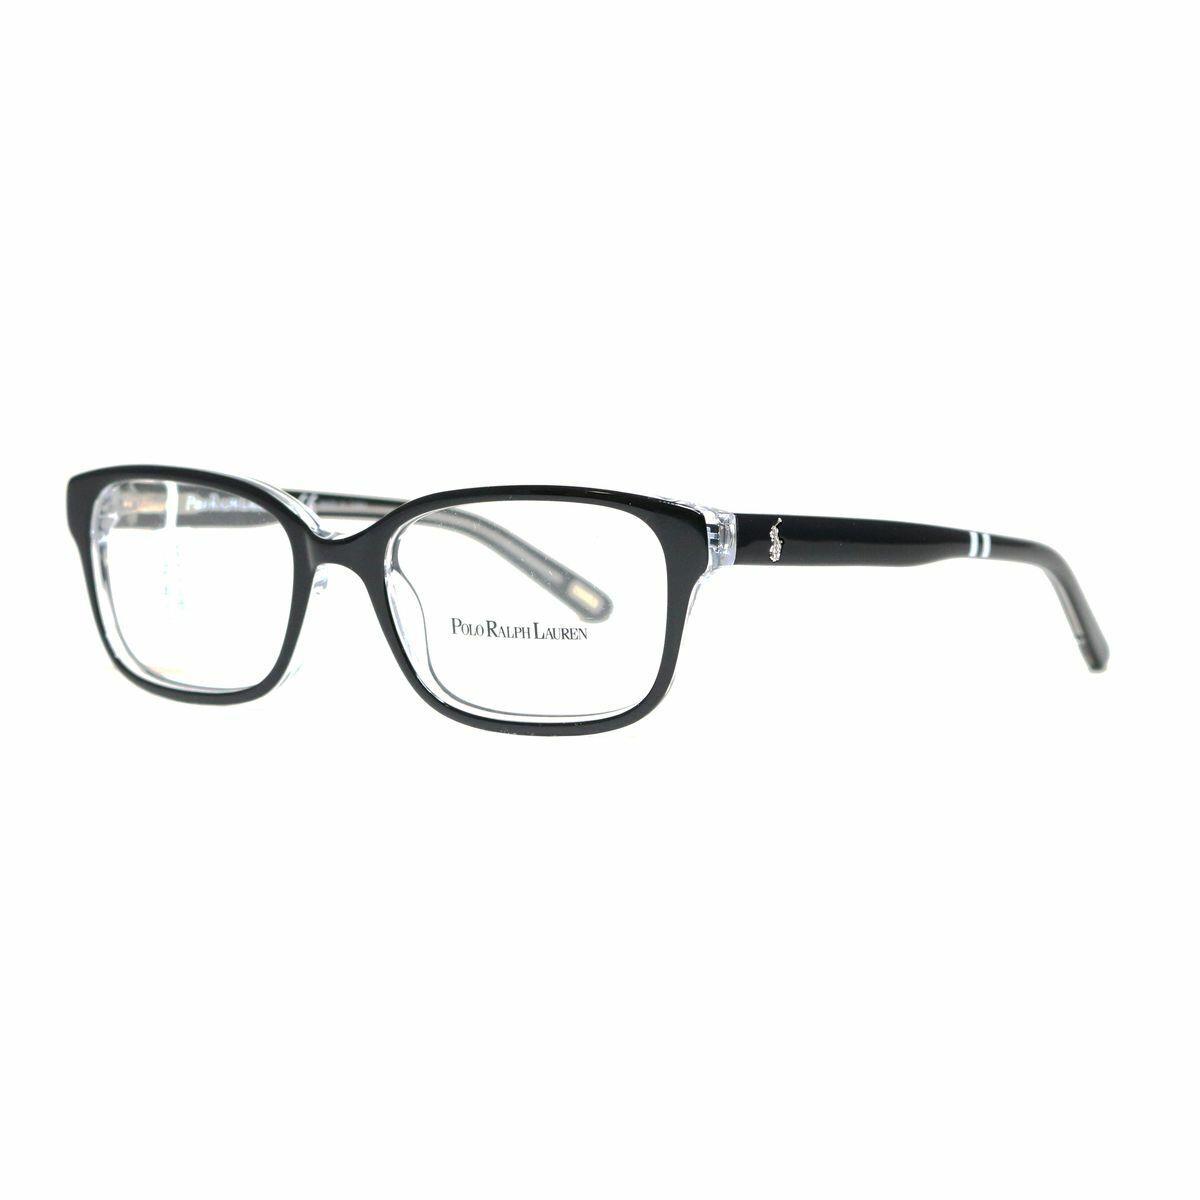 Eyeglasses Ralph Lauren Polo Junior PP8520 541 Black Crystal Demo Lens 48 mm